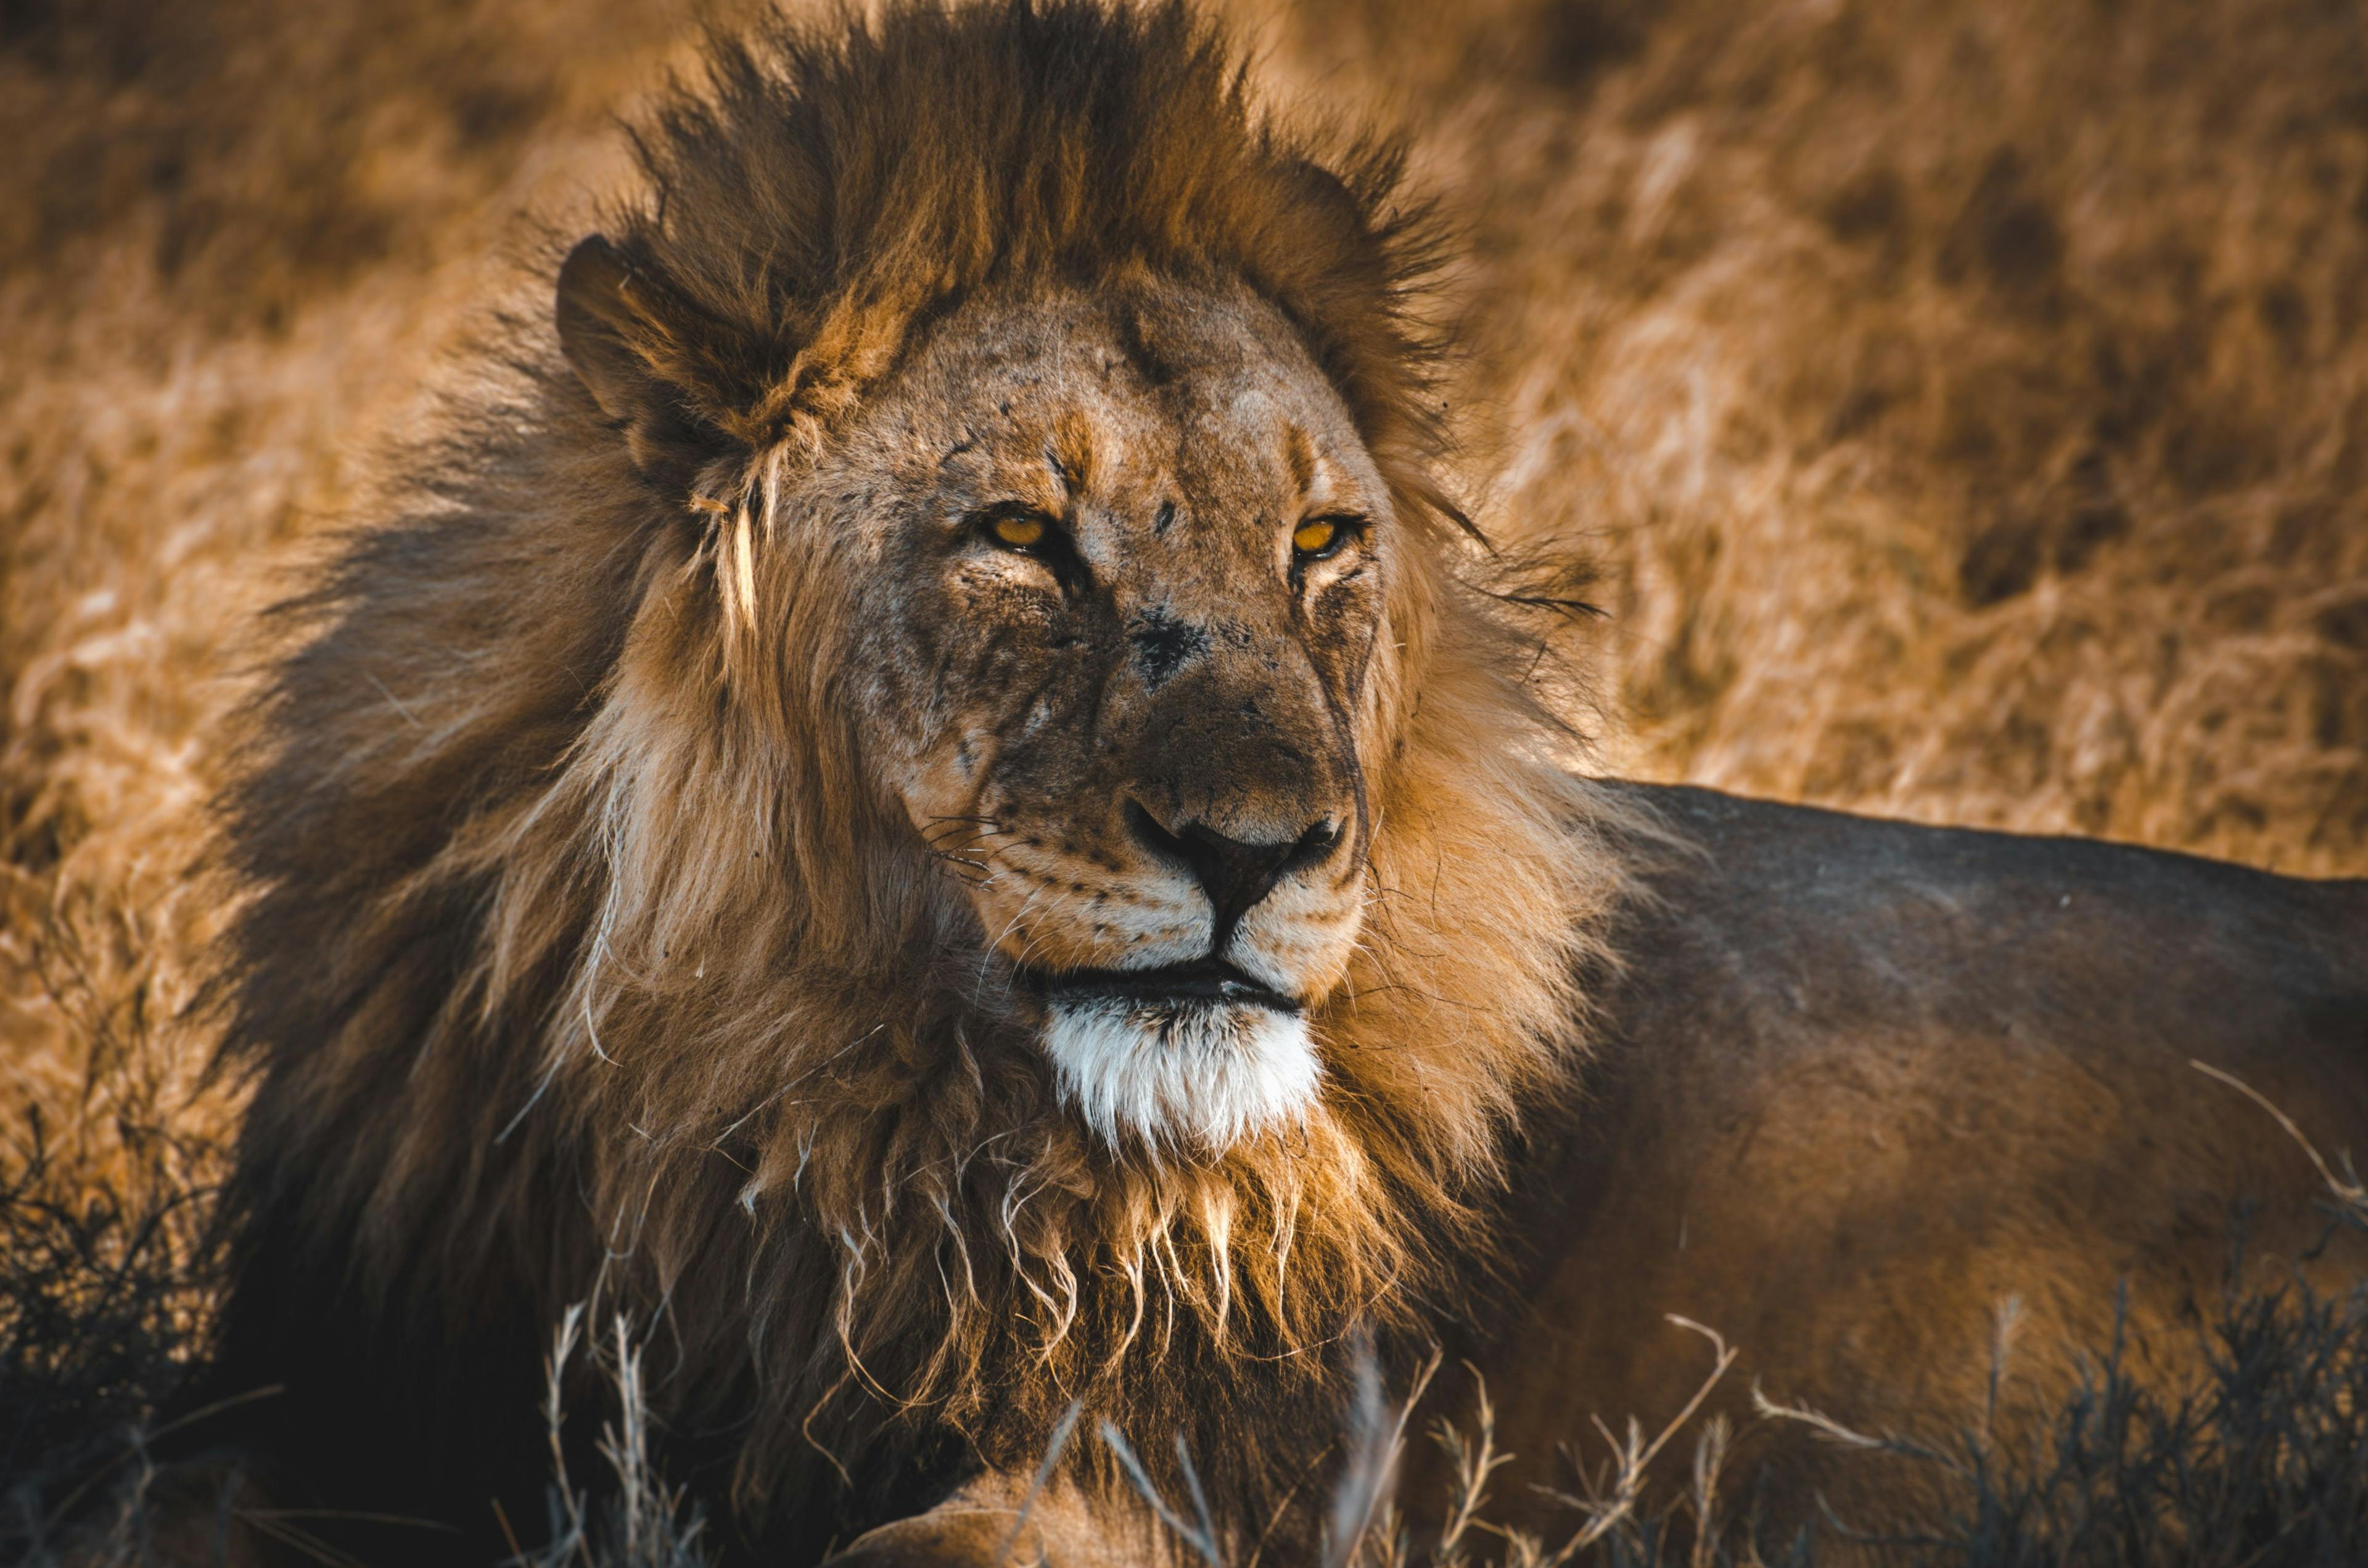 Lion in Etosha National Park, Namibia.